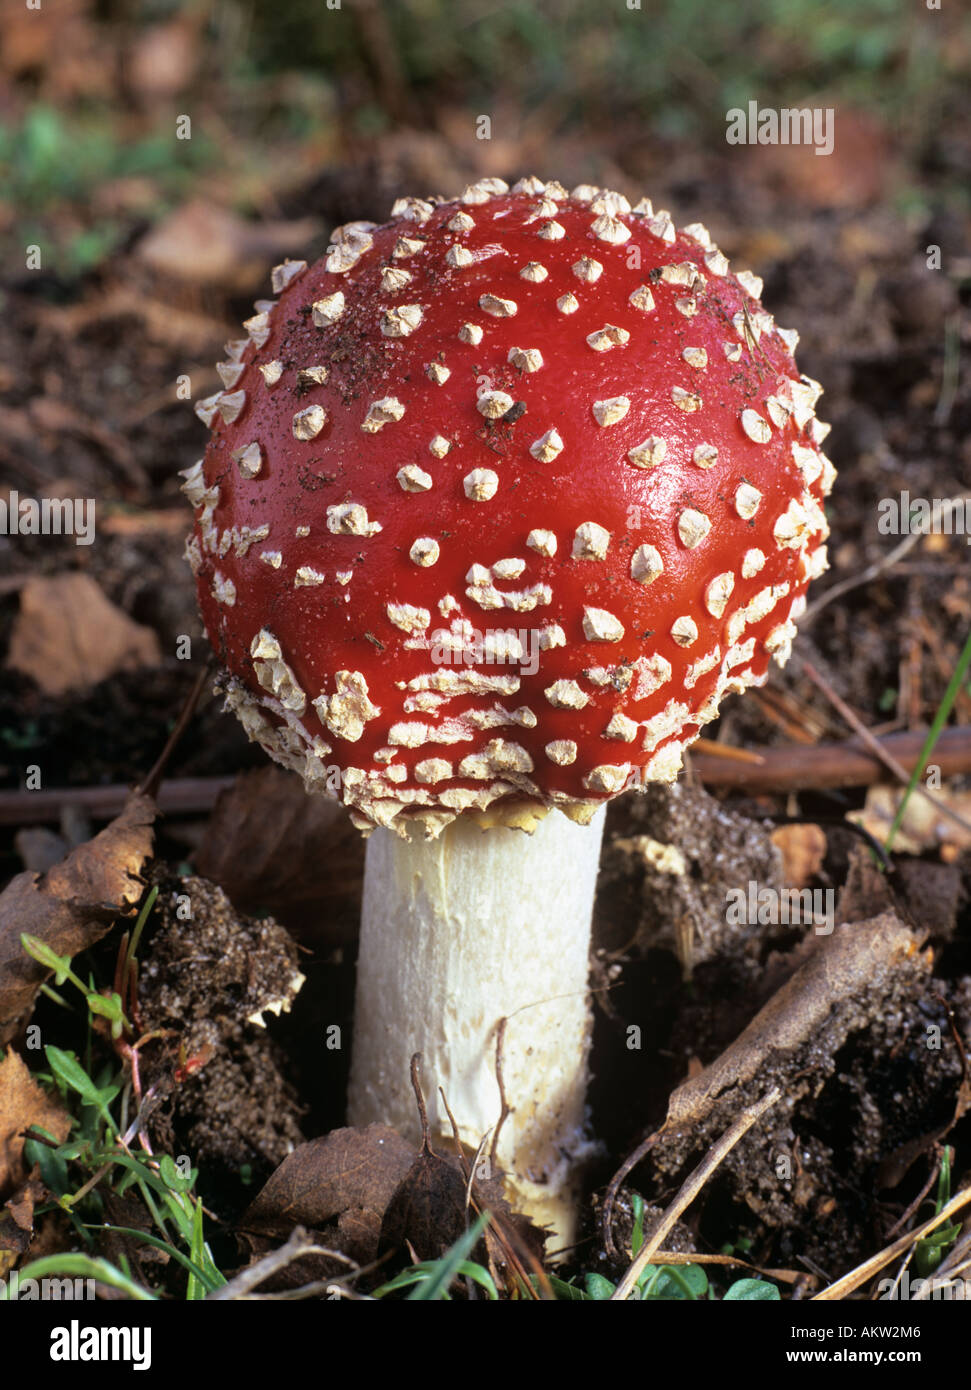 Agaric mouche Amanita muscaria champignon rouge apparu récemment la fructification, poussant dans les bois. Angleterre Royaume-Uni Grande-Bretagne Banque D'Images